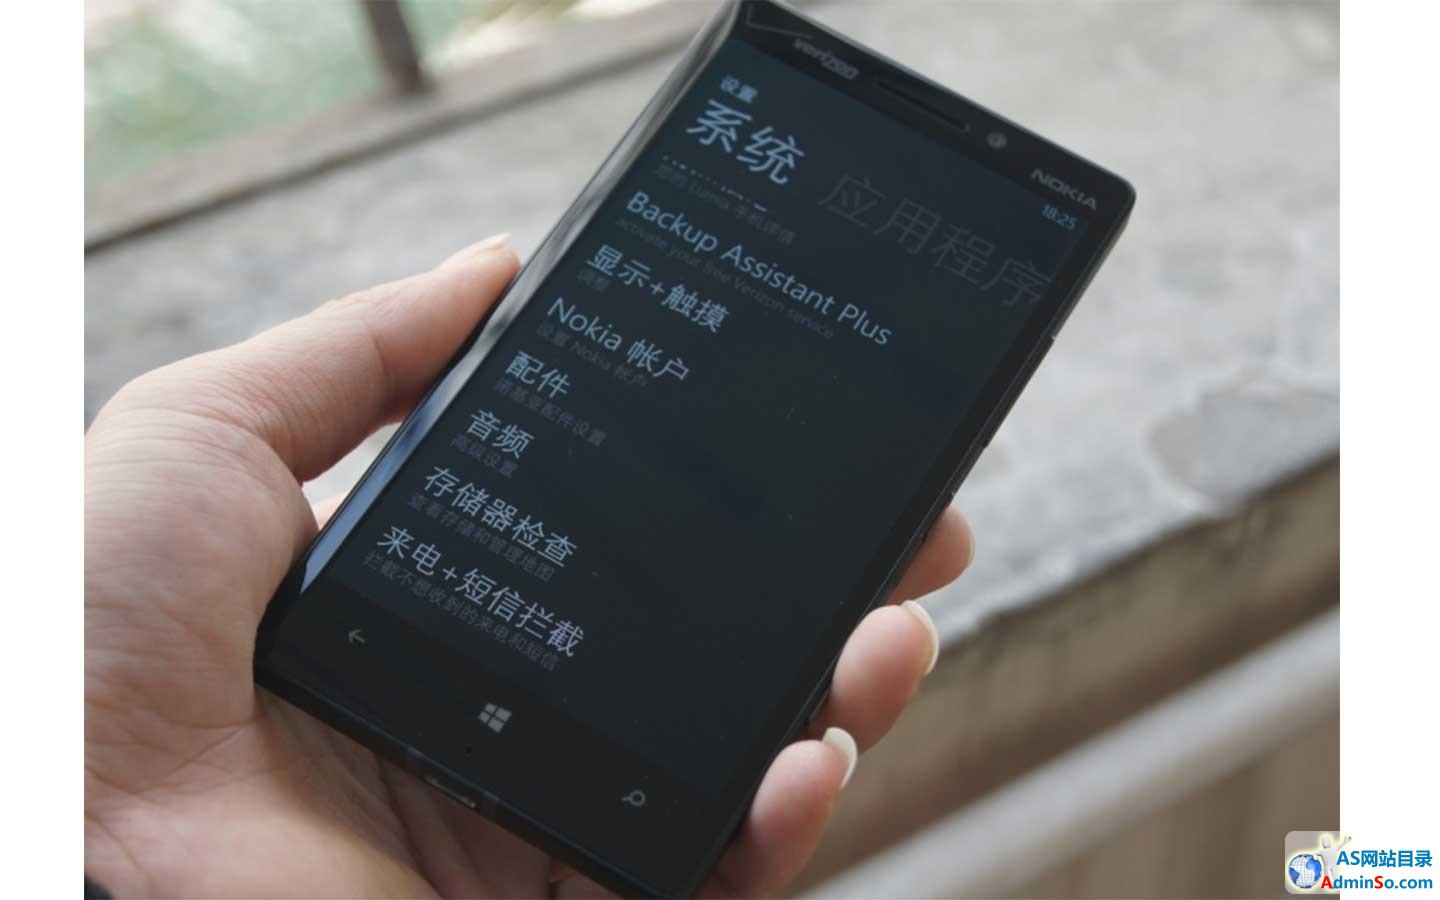 3800元骁龙800 Lumia 929真机首现淘宝,平板